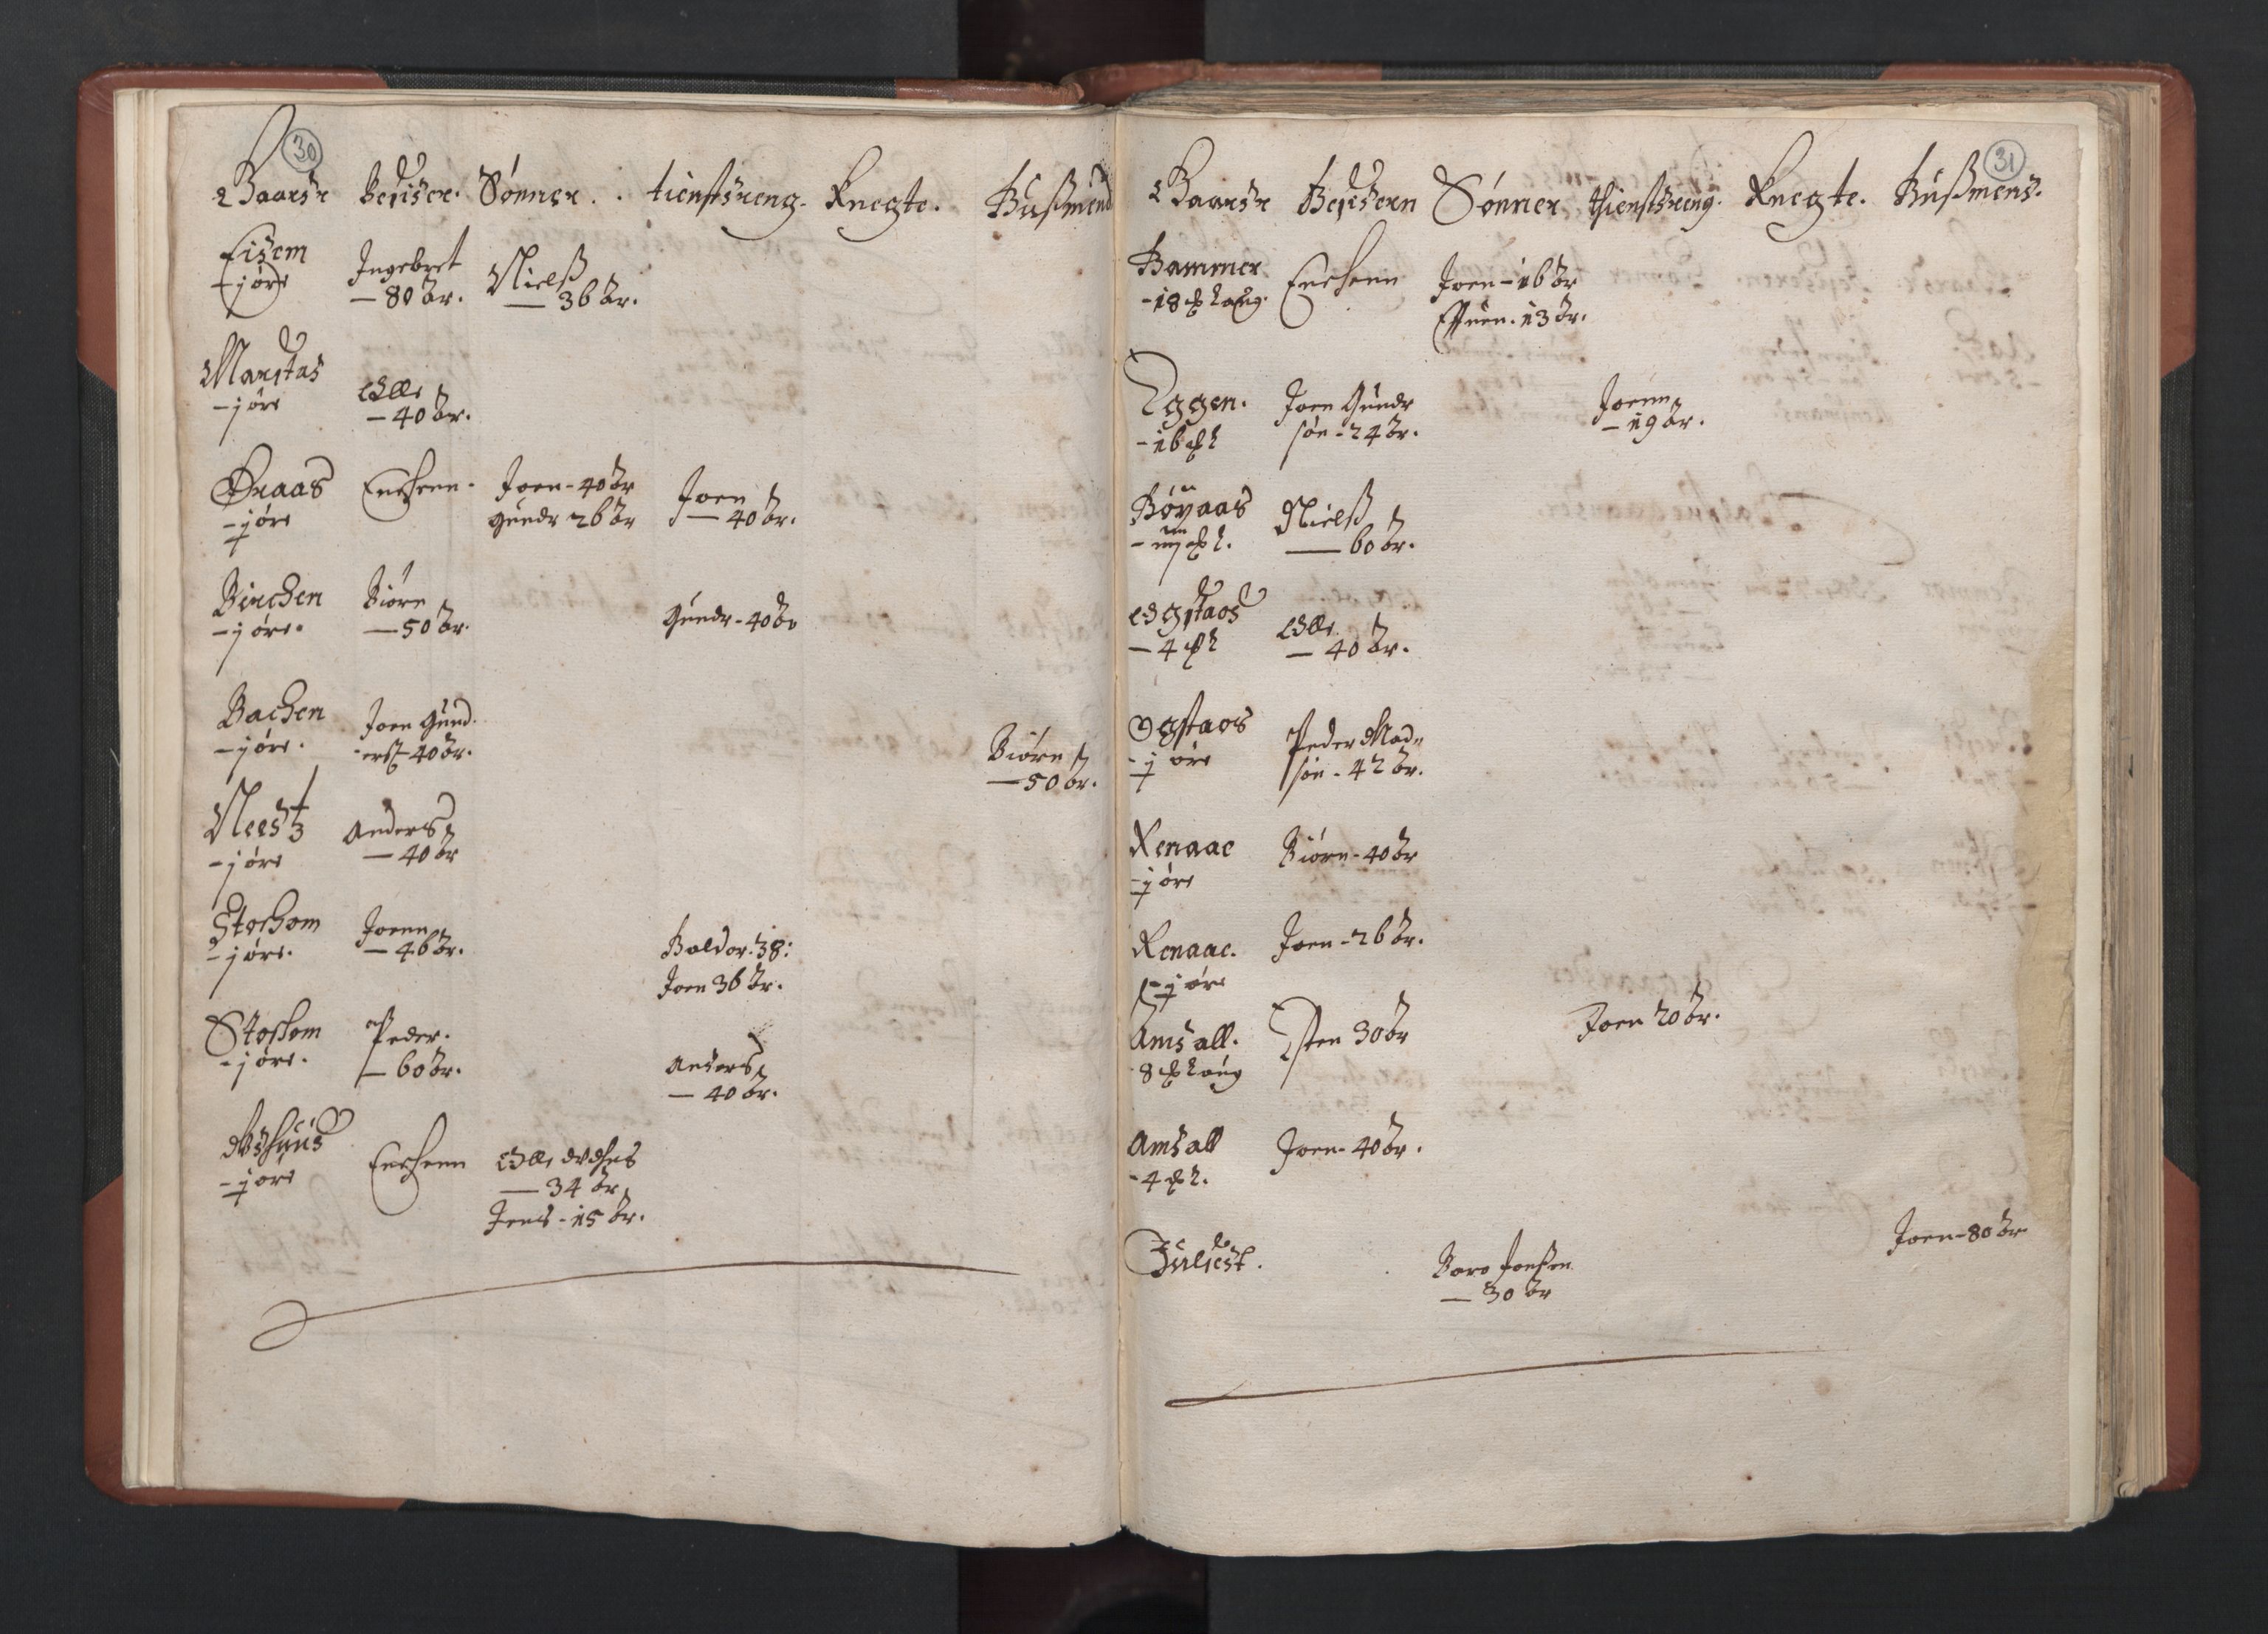 RA, Bailiff's Census 1664-1666, no. 19: Fosen fogderi, Inderøy fogderi, Selbu fogderi, Namdal fogderi and Stjørdal fogderi, 1664-1665, p. 30-31